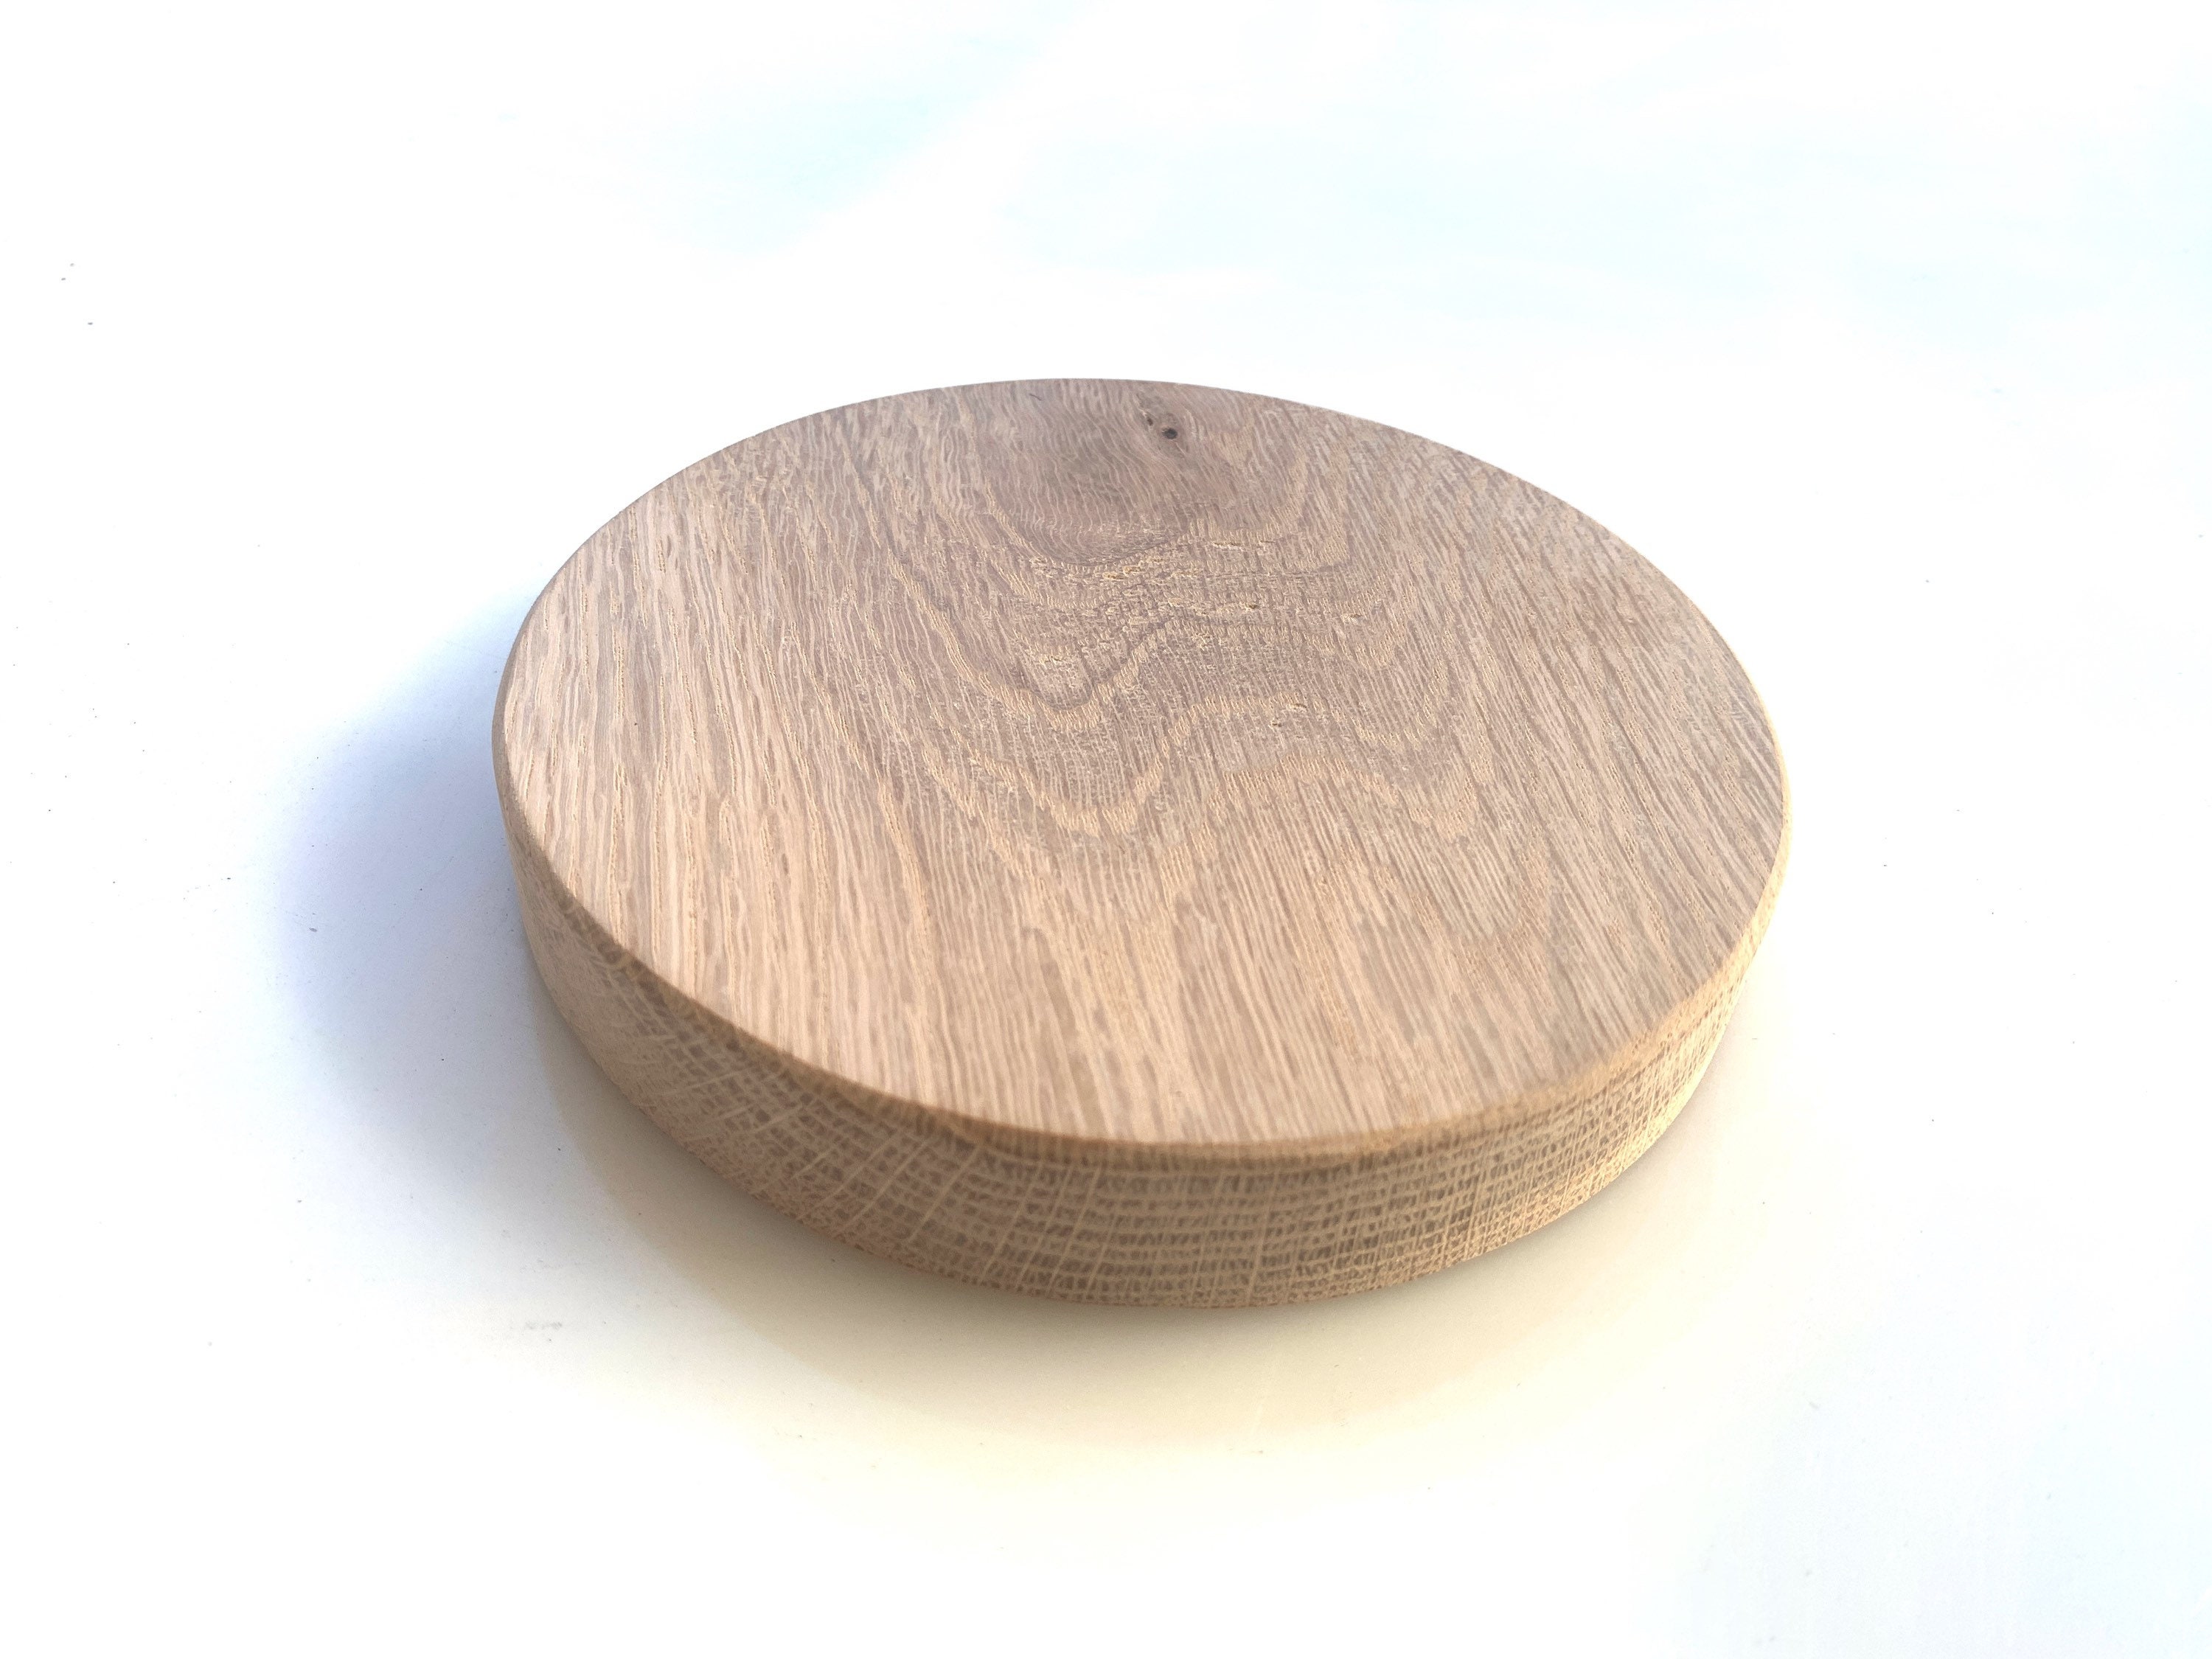 20PCS Blank Plain Round Beech Wood Slices Discs for Art Model DIY Hobby  Handmade